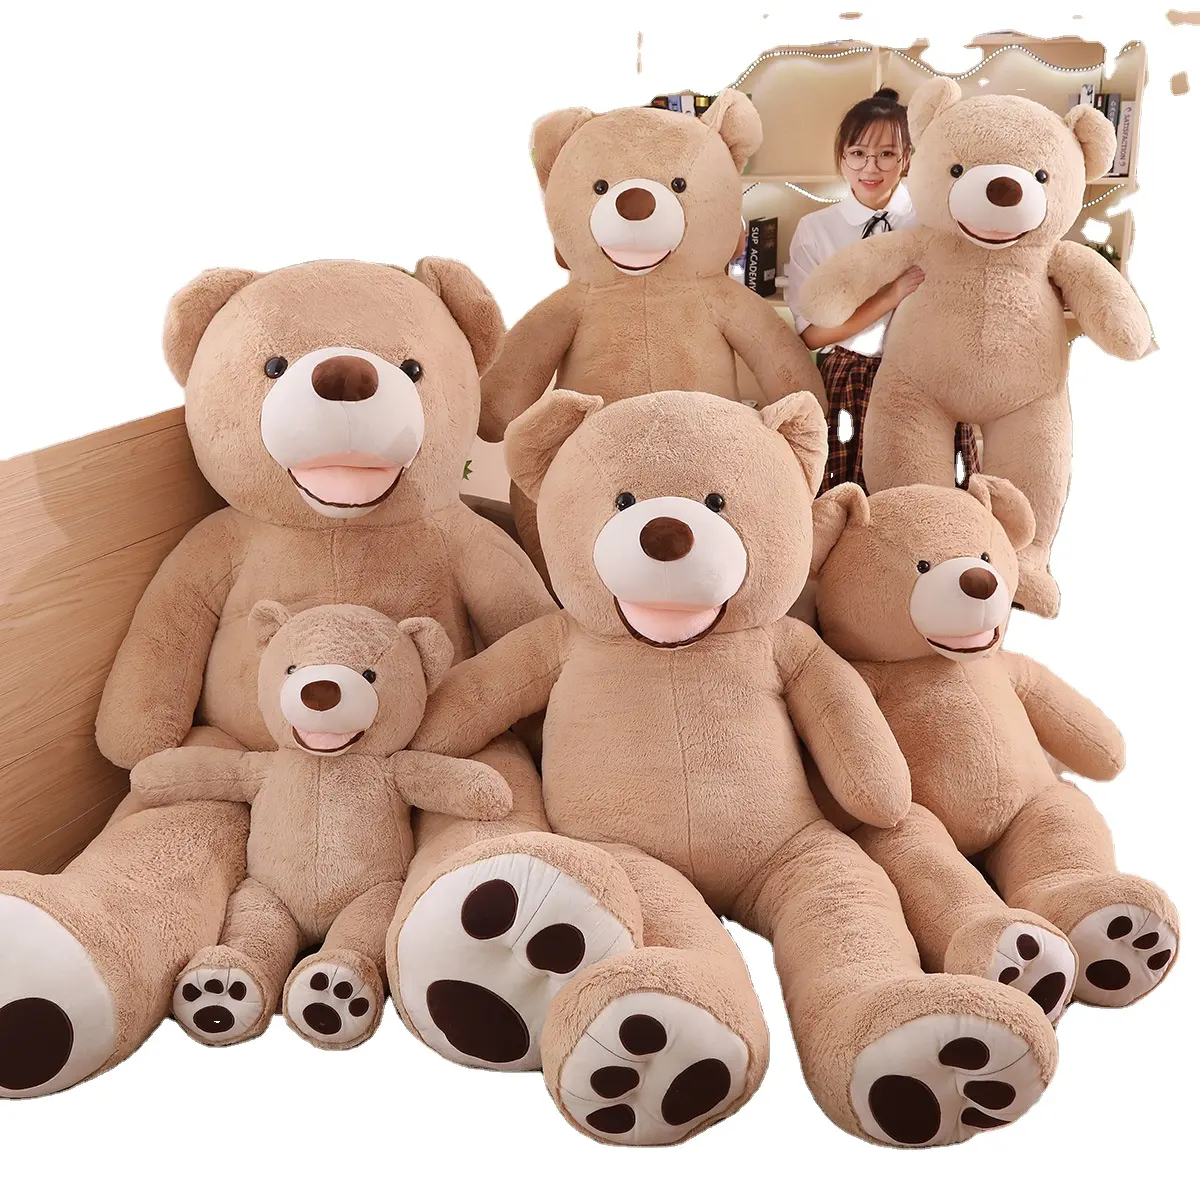 도매 가격 40cm 미국 큰 곰 봉제 장난감 인형 peluches 아이들을위한 거대한 미국 테디 베어 선물